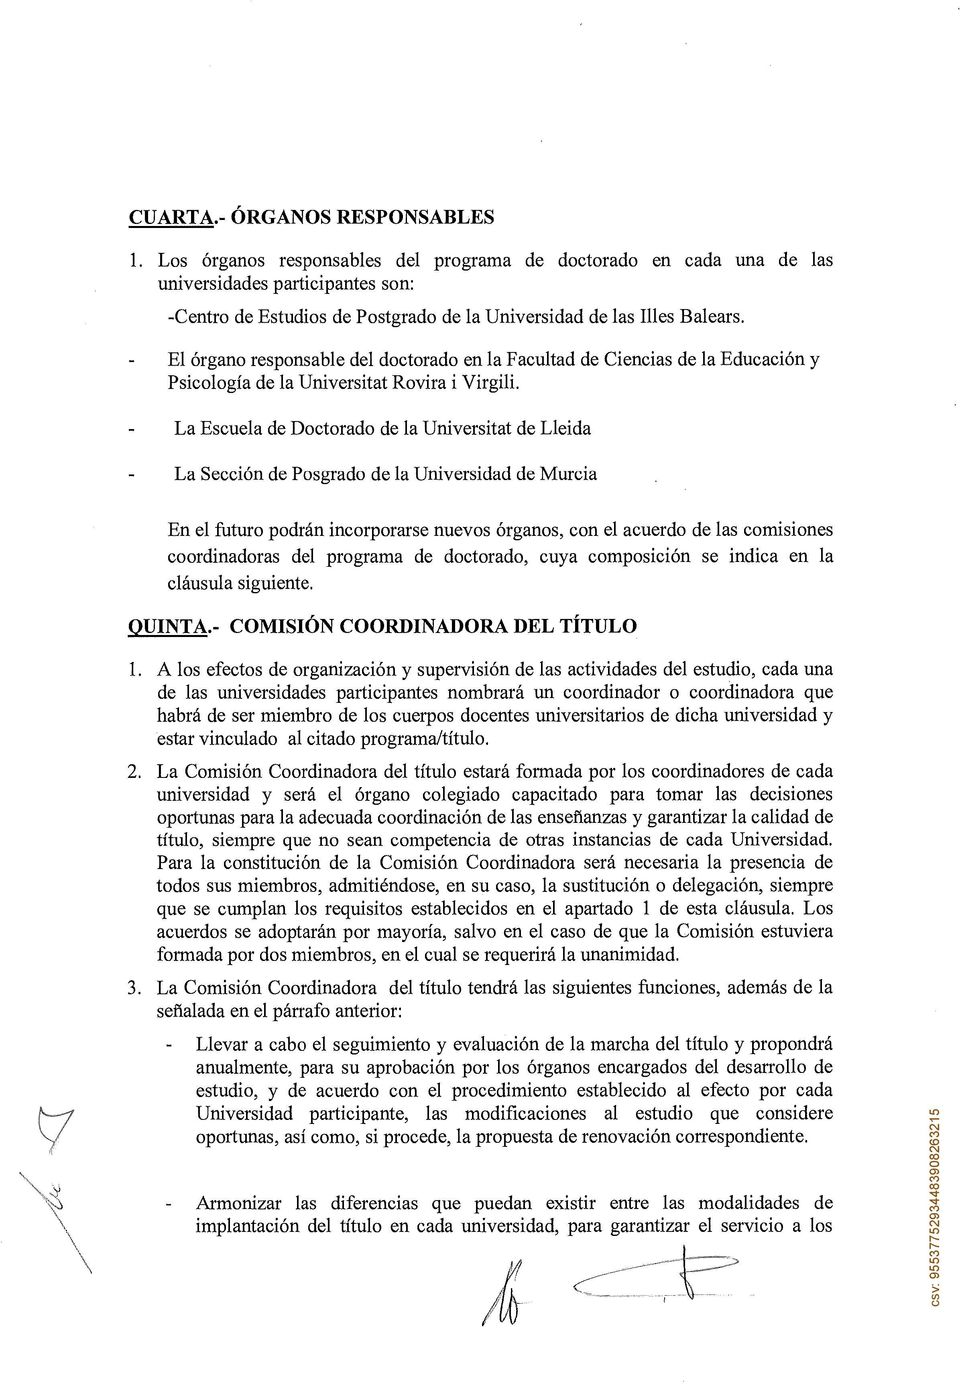 El órgano responsable del doctorado en la Facultad de Ciencias de la Educación y Psicología de la Universitat Rovira i Virgili.